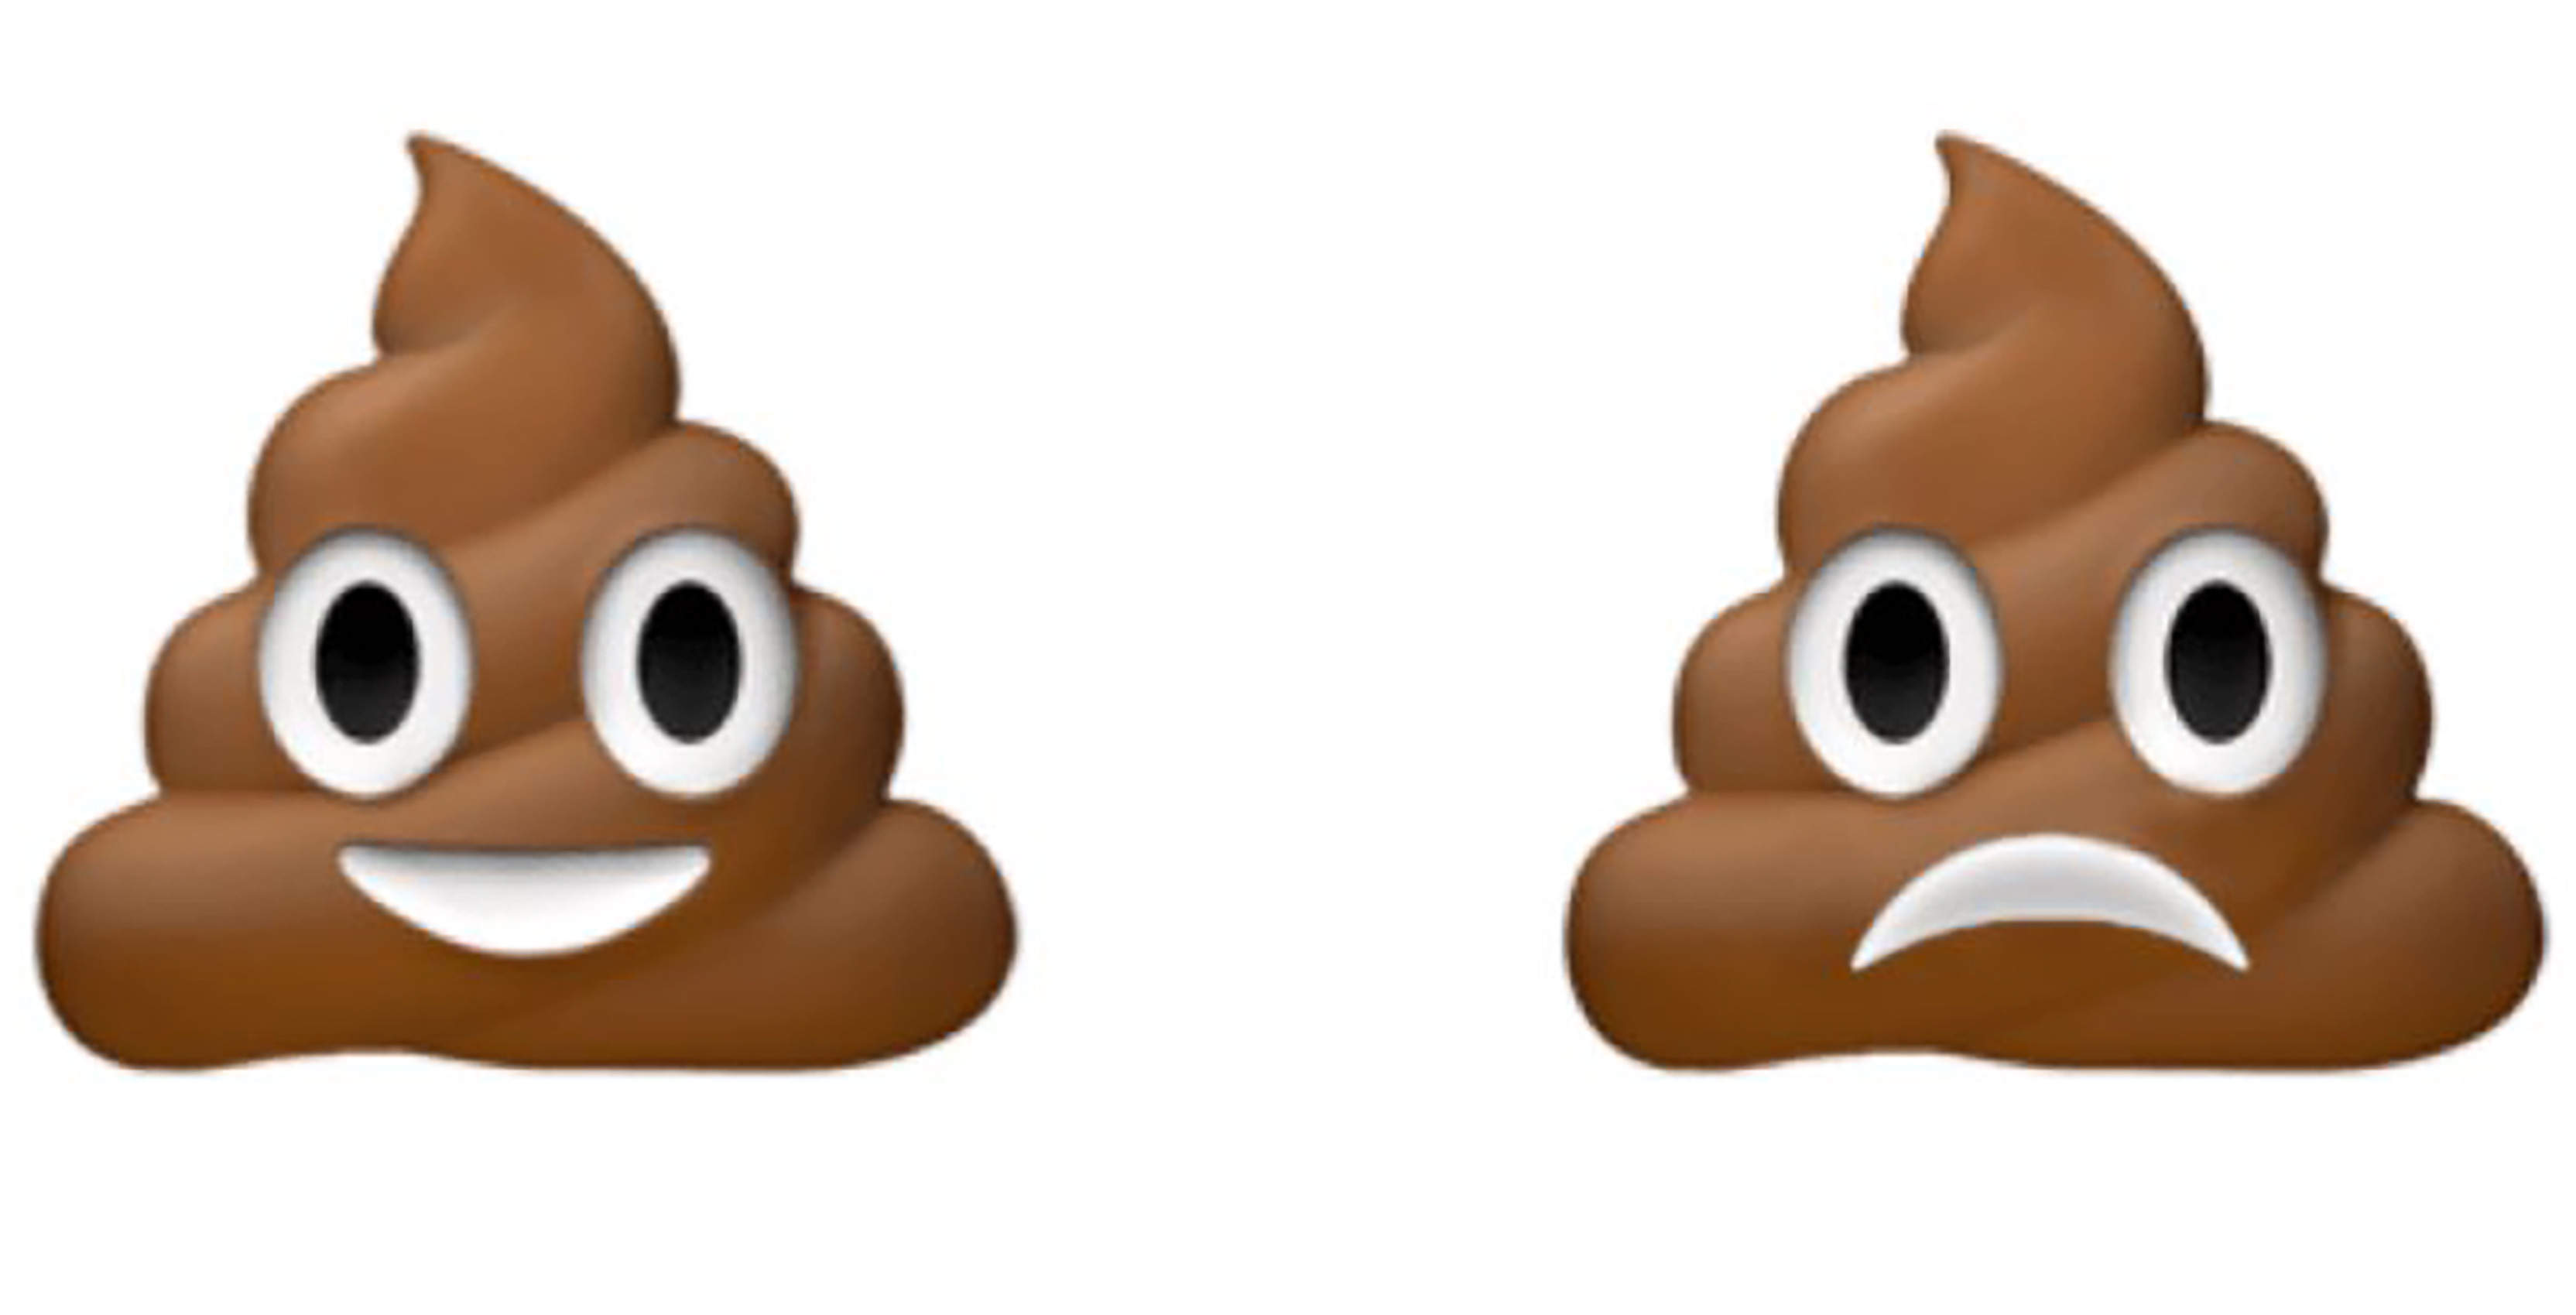 poop emoji